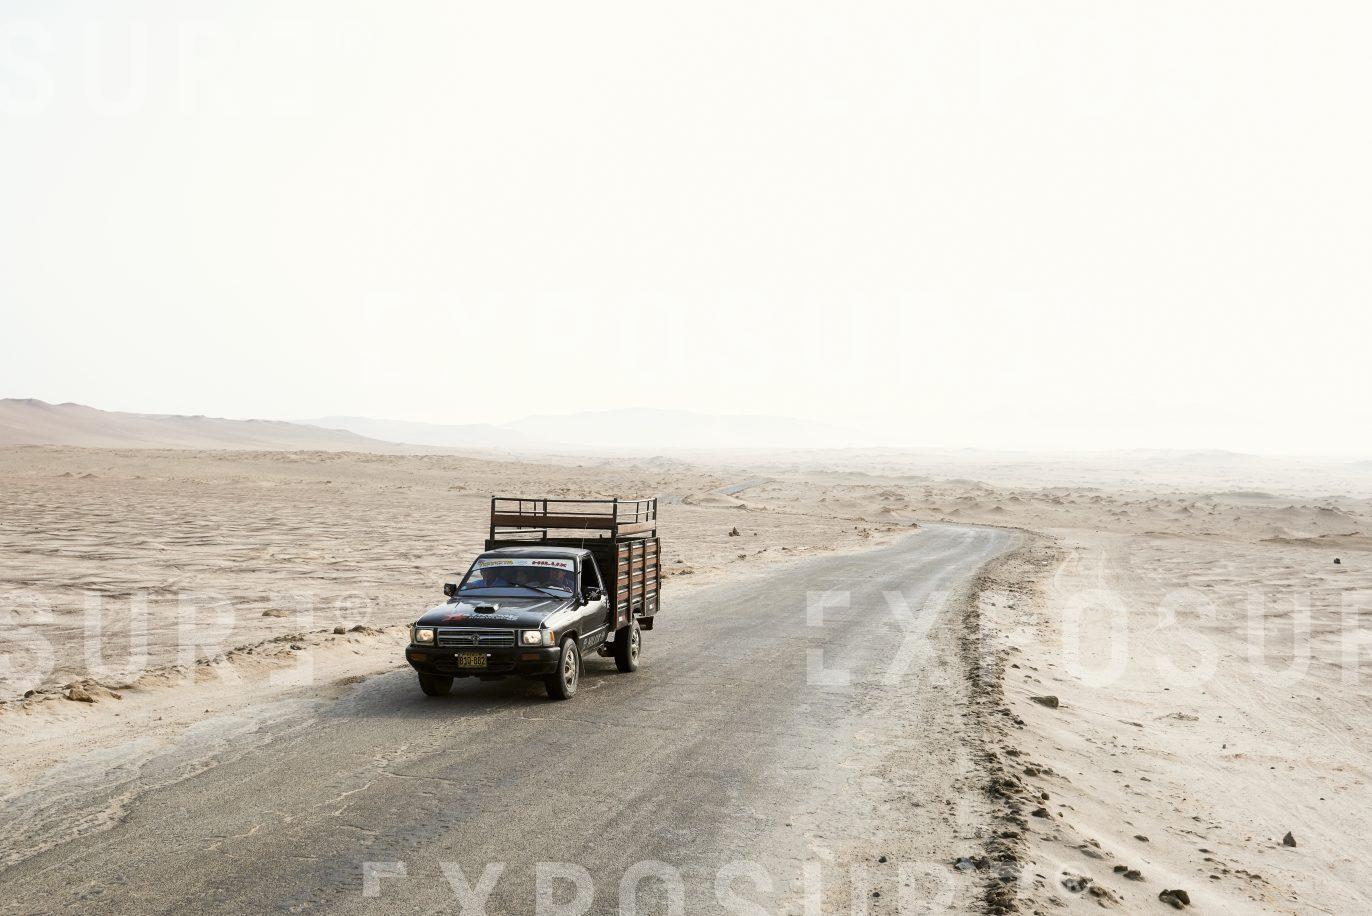 Toyota Hilux in the Peruvian desert